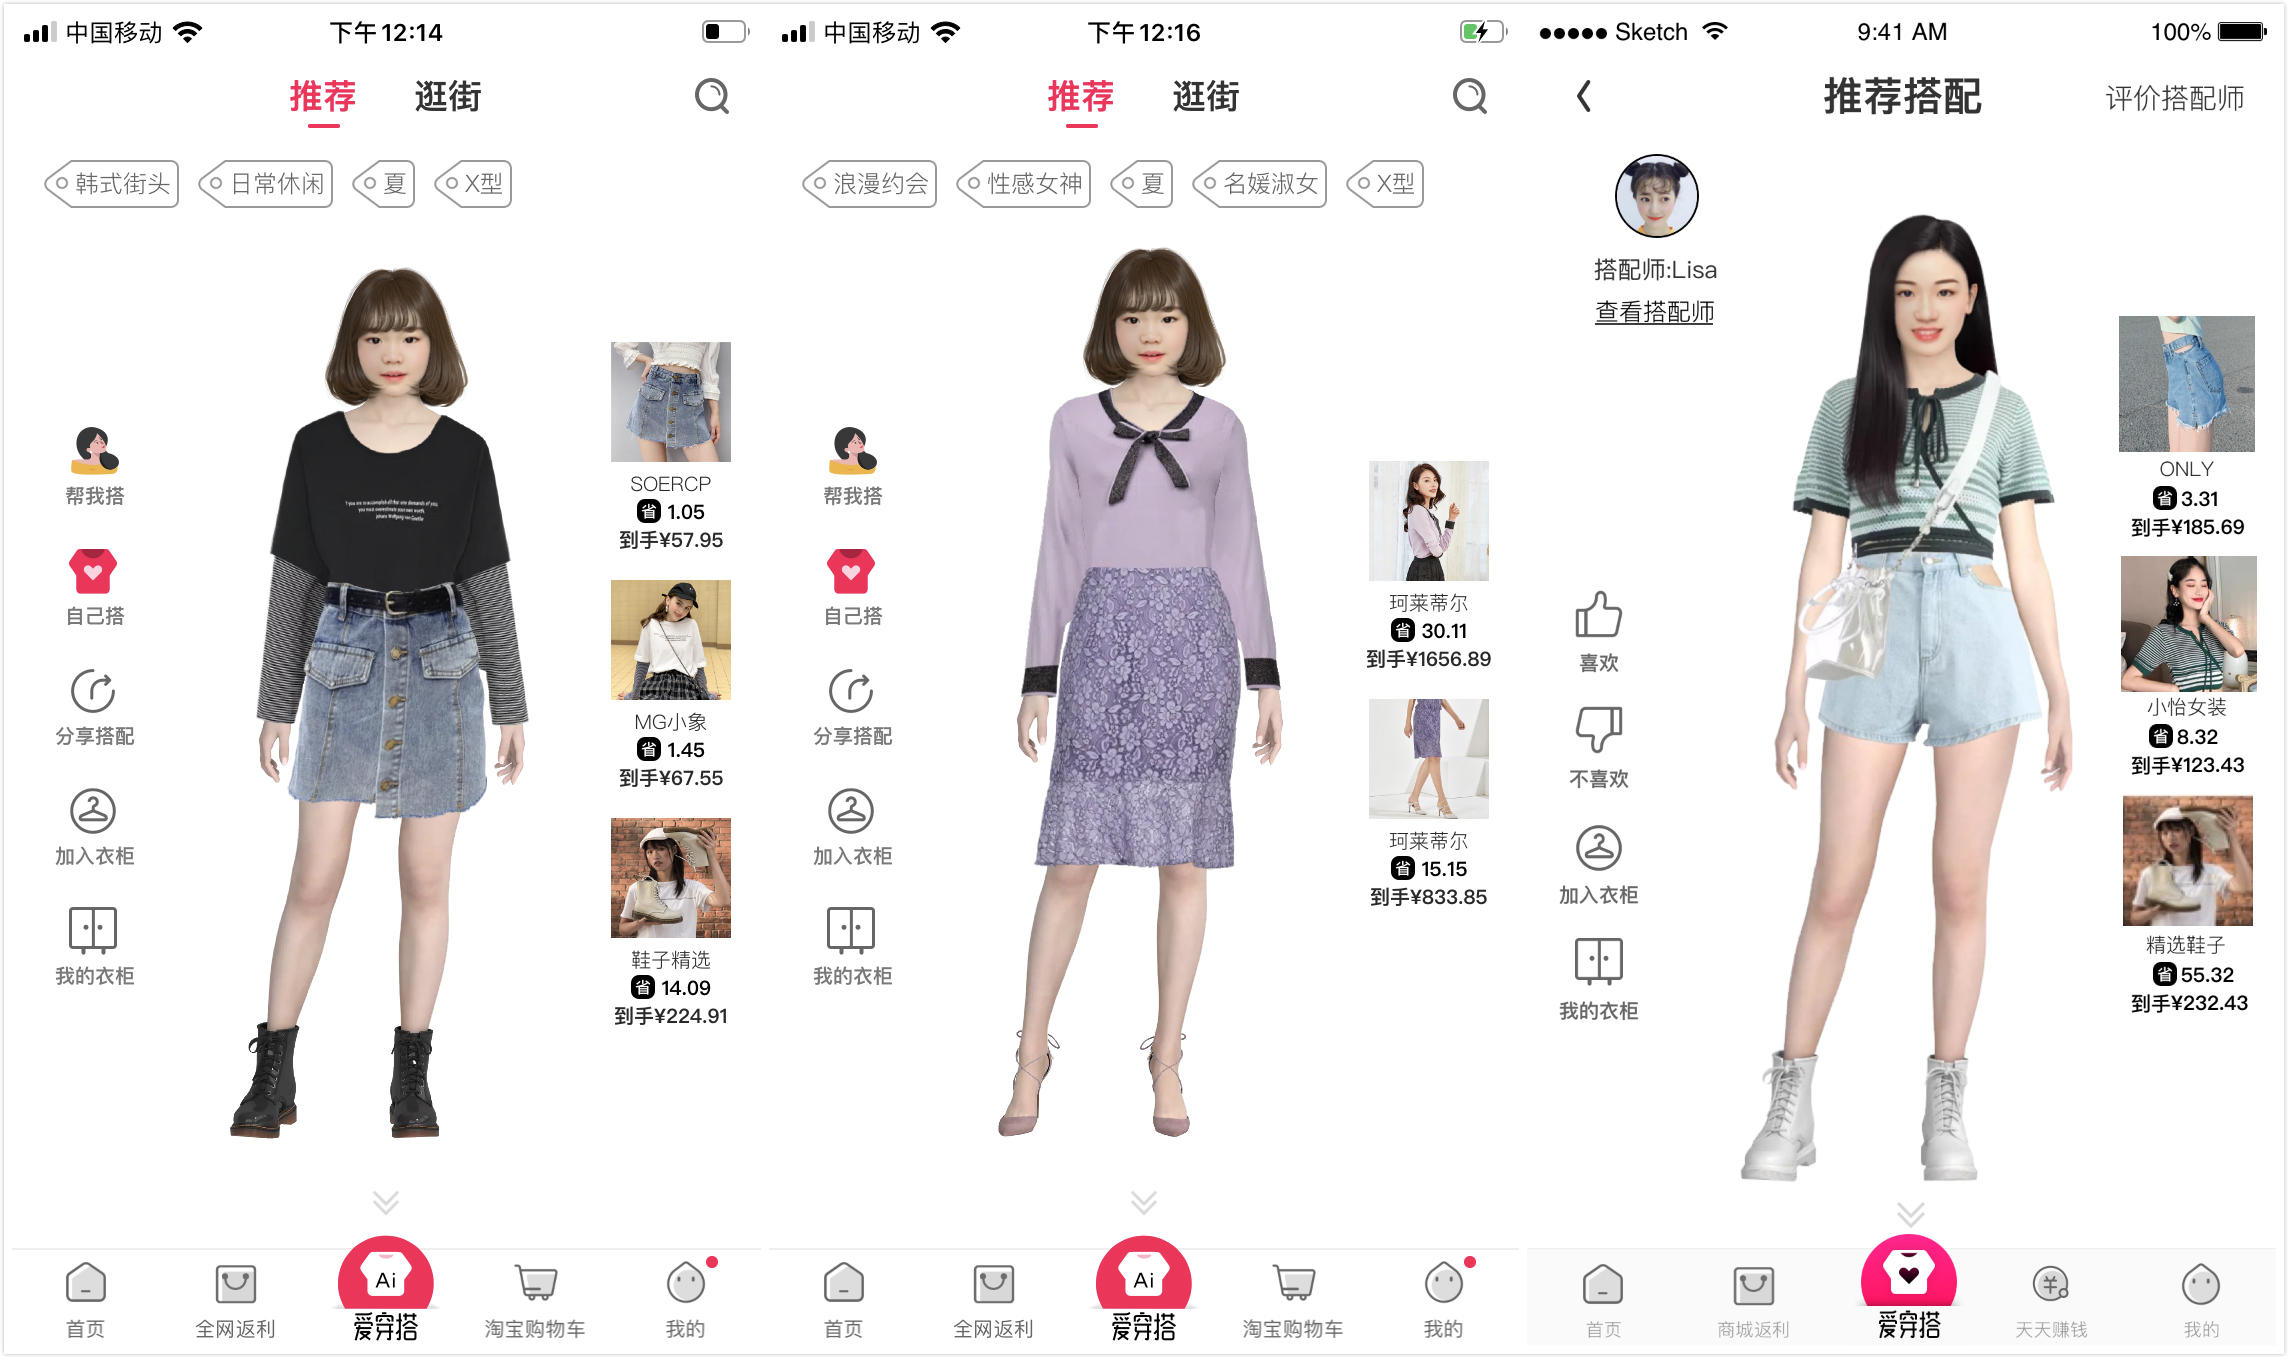 「淘粉吧」推出AI服装搭配平台「爱穿搭」，希望推动中国美学教育发展